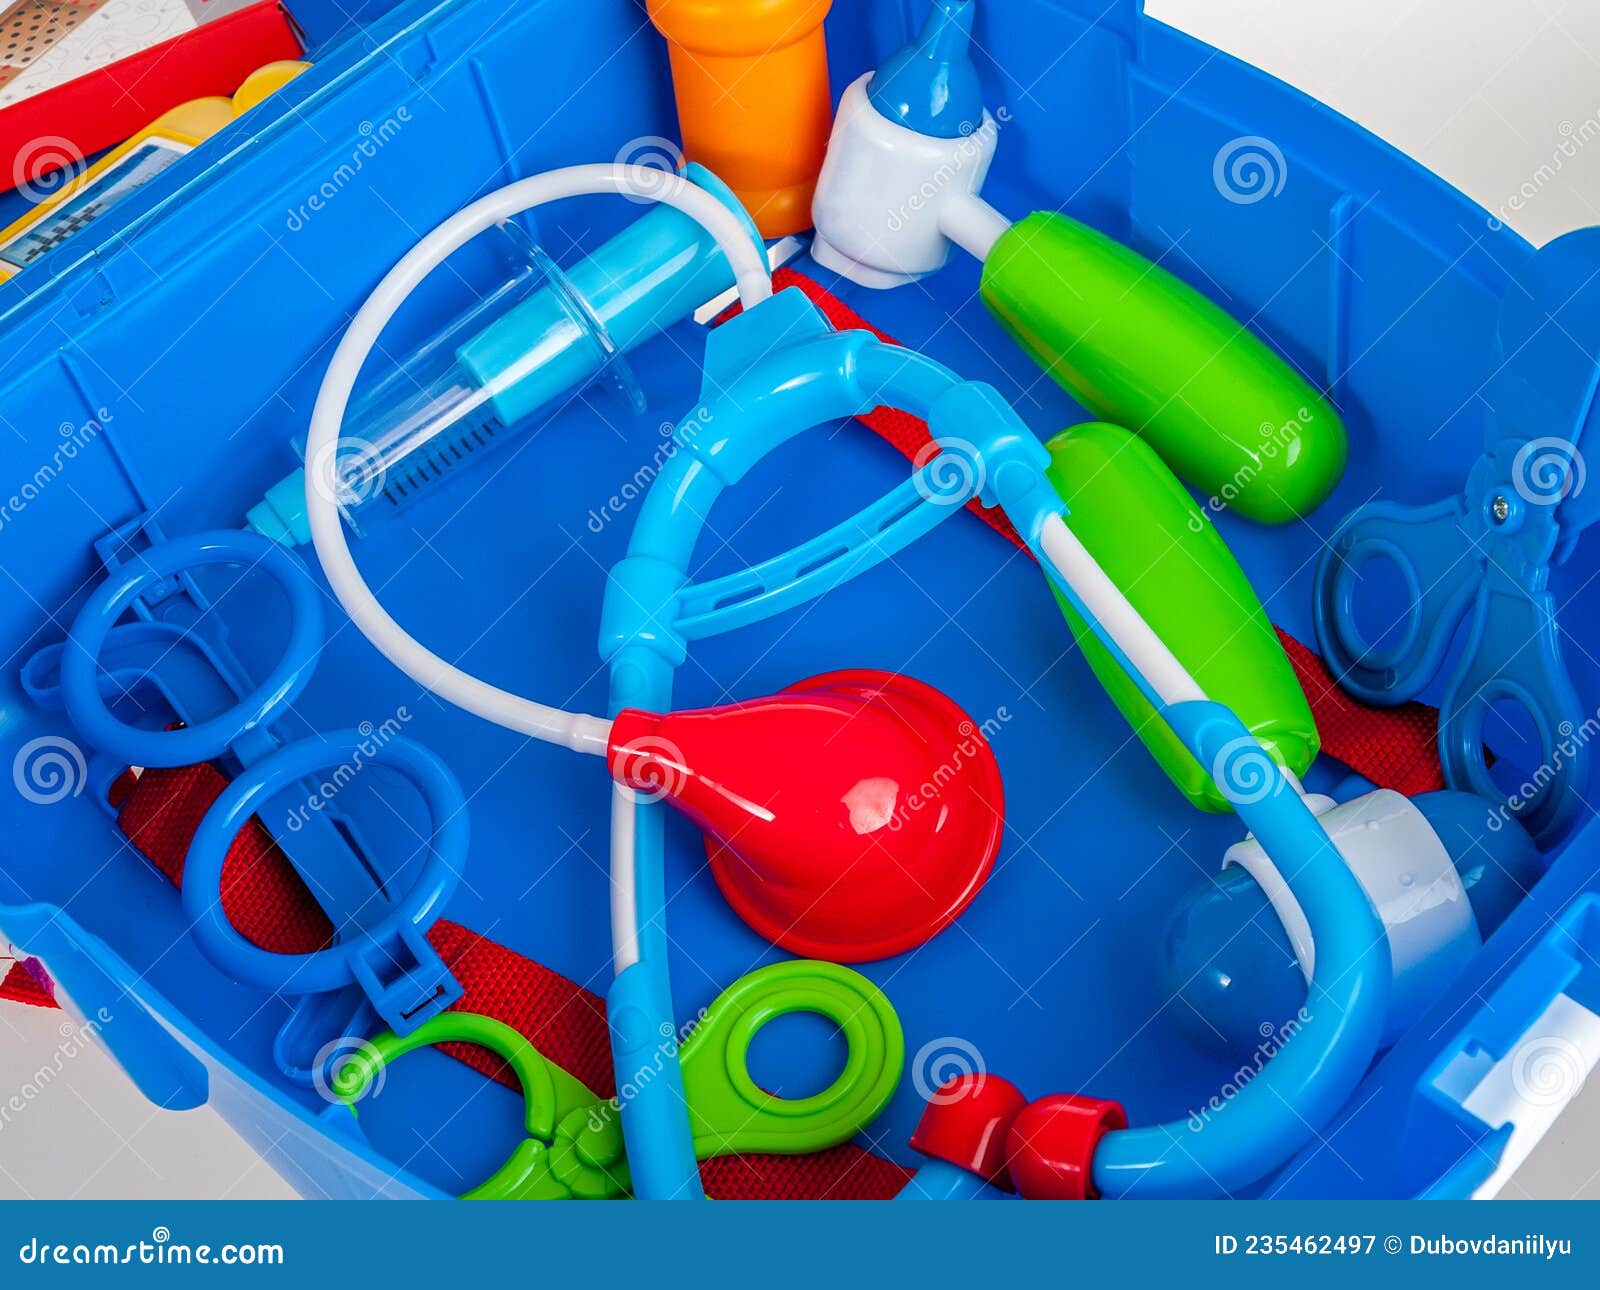 Estetoscopio, Juguetes De Plástico Para Niños, Concepto Médico